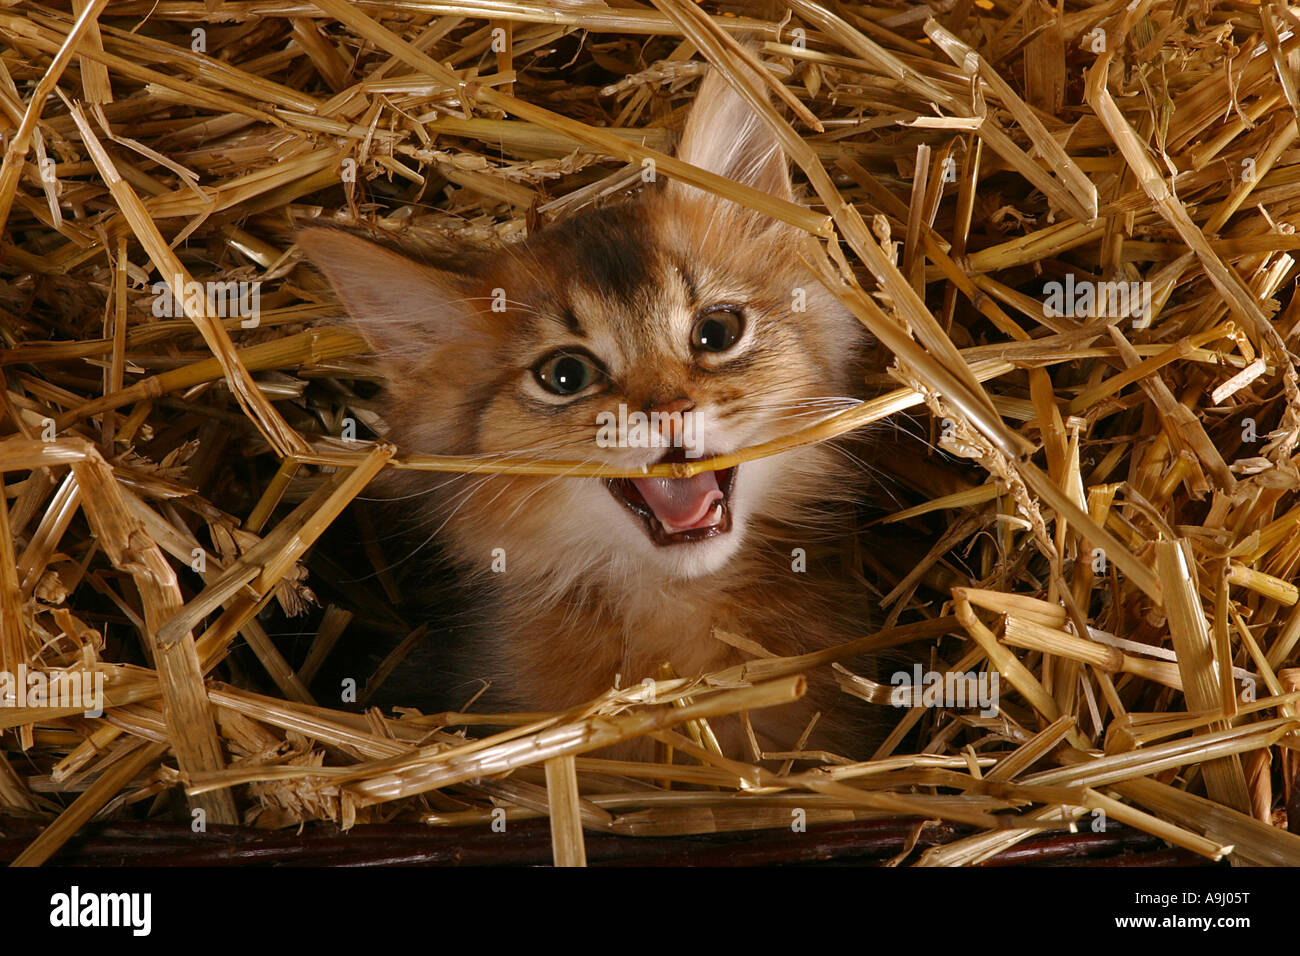 Somali kitten in straw Stock Photo